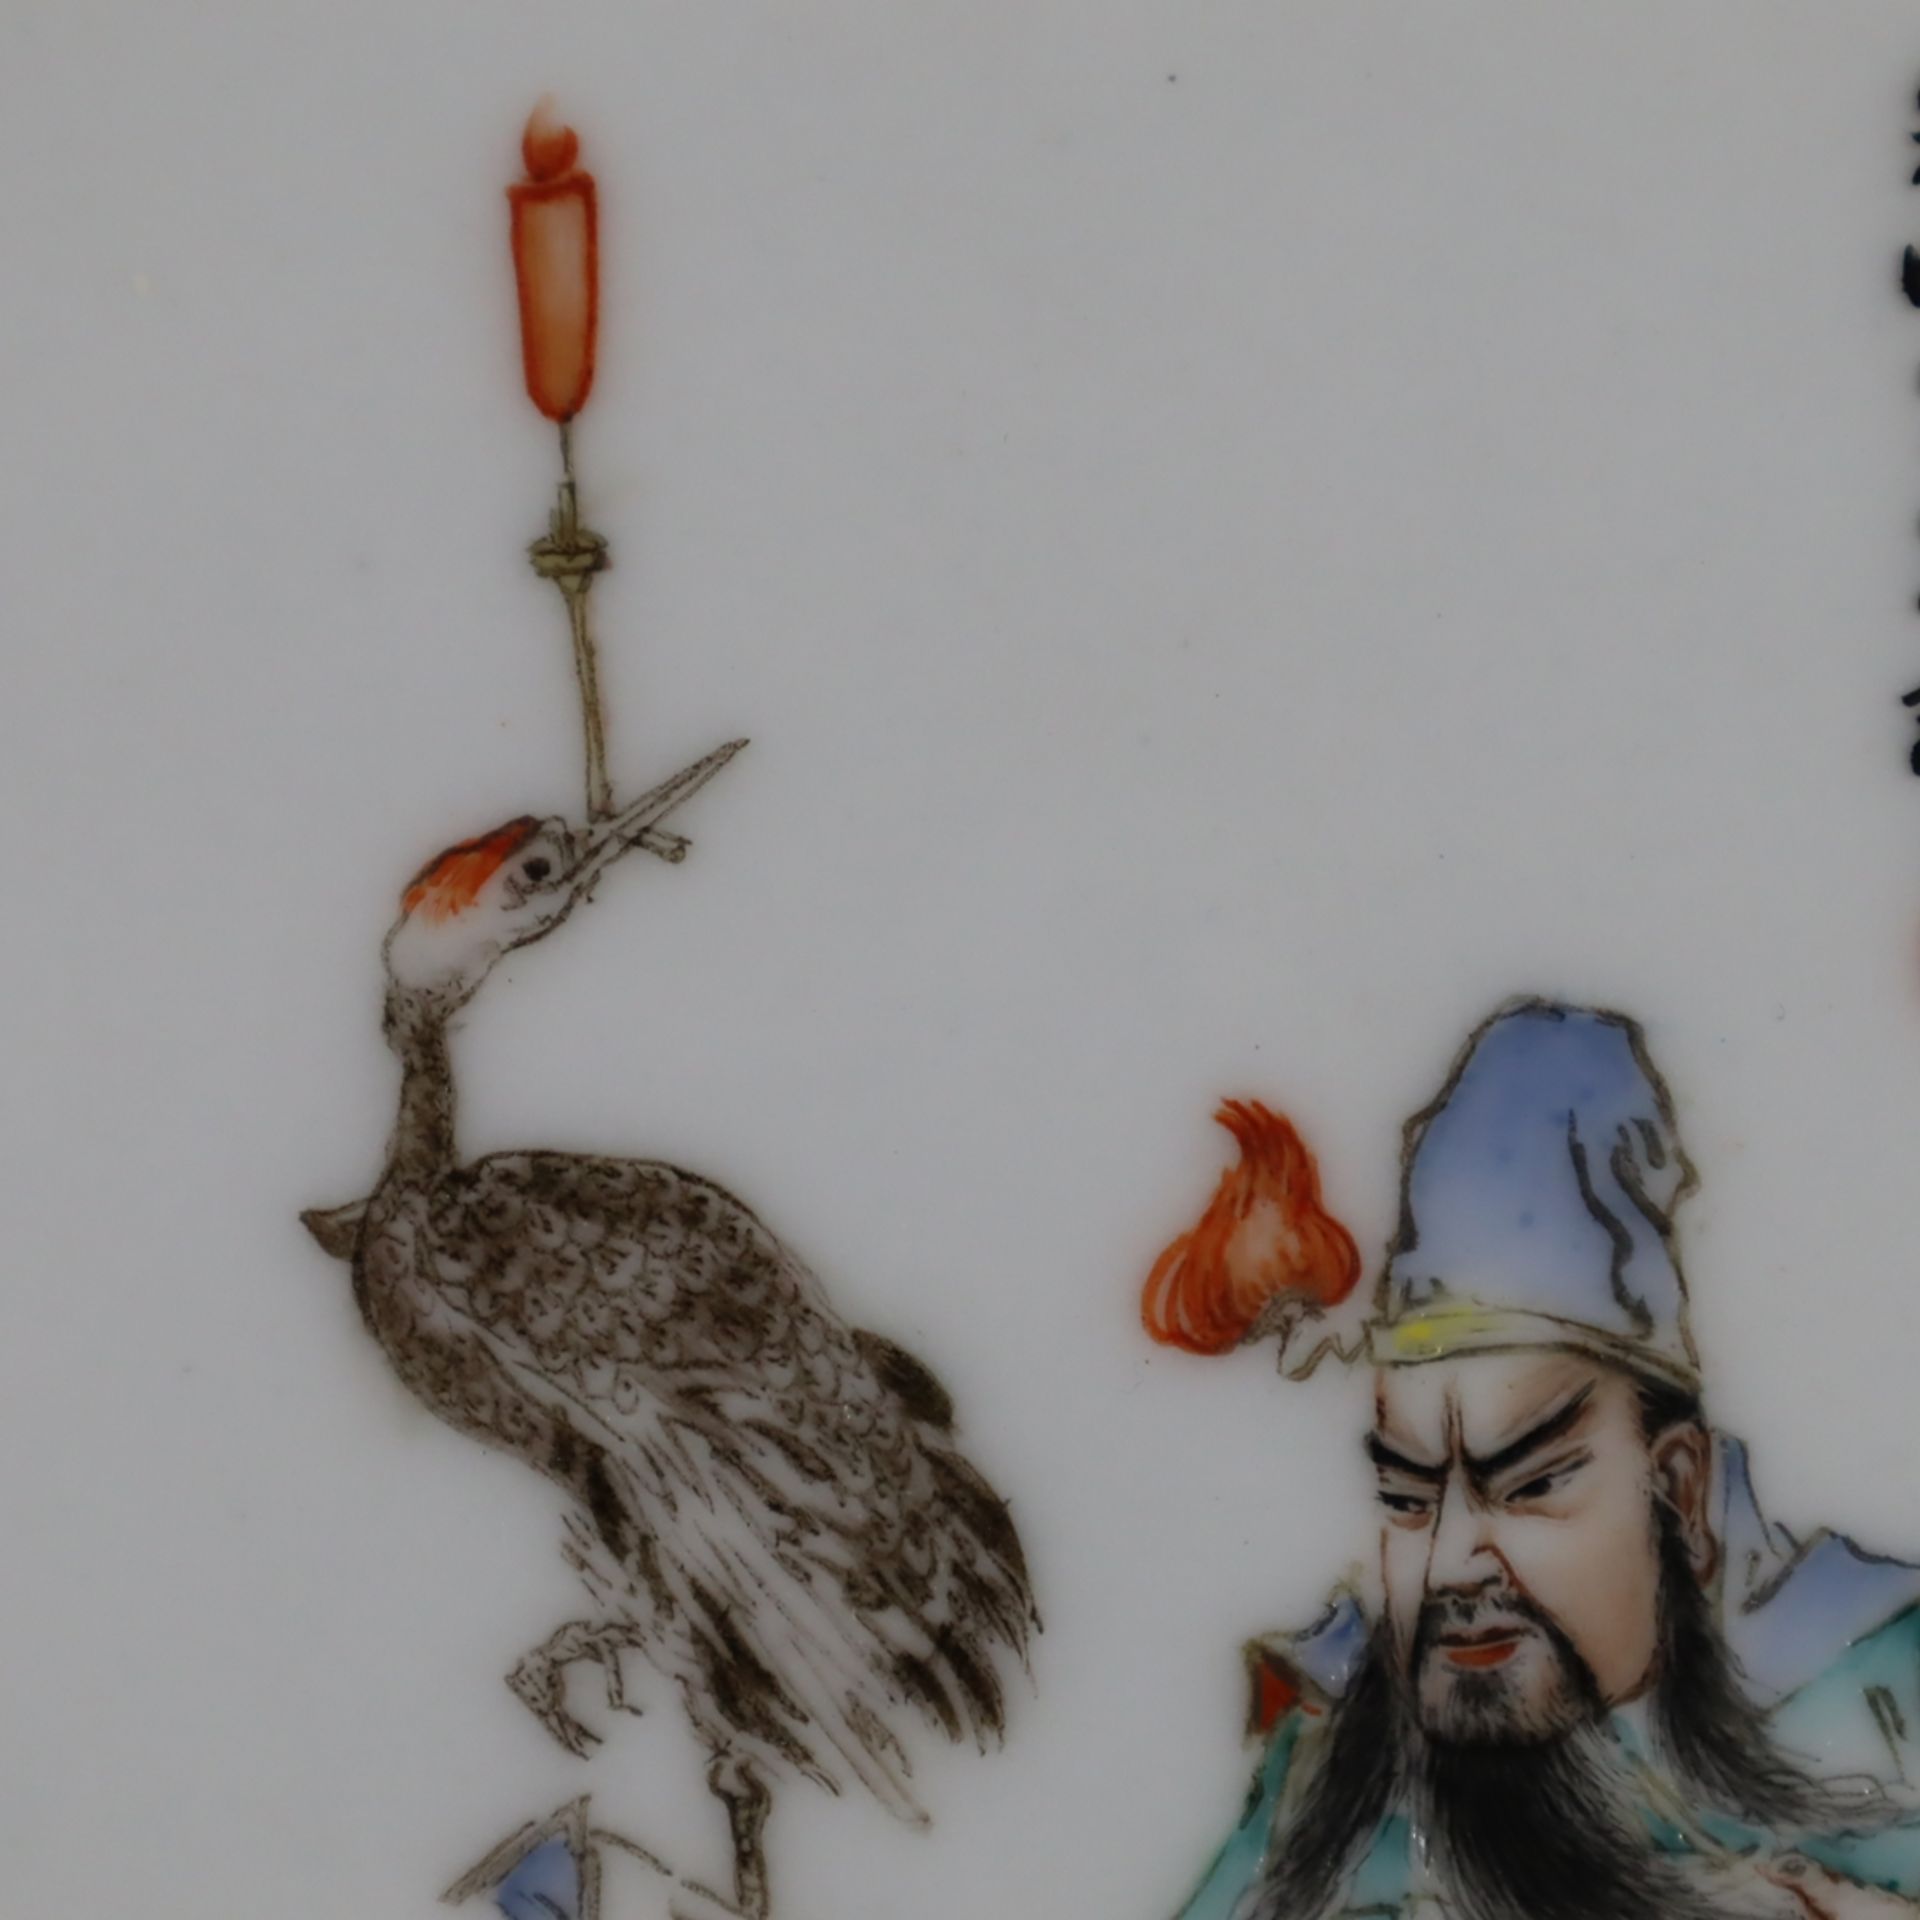 Famille rose-Porzellanbild - China 20.Jh., in polychromen Emailfarben gemalte Figur des Generals Gu - Bild 4 aus 6